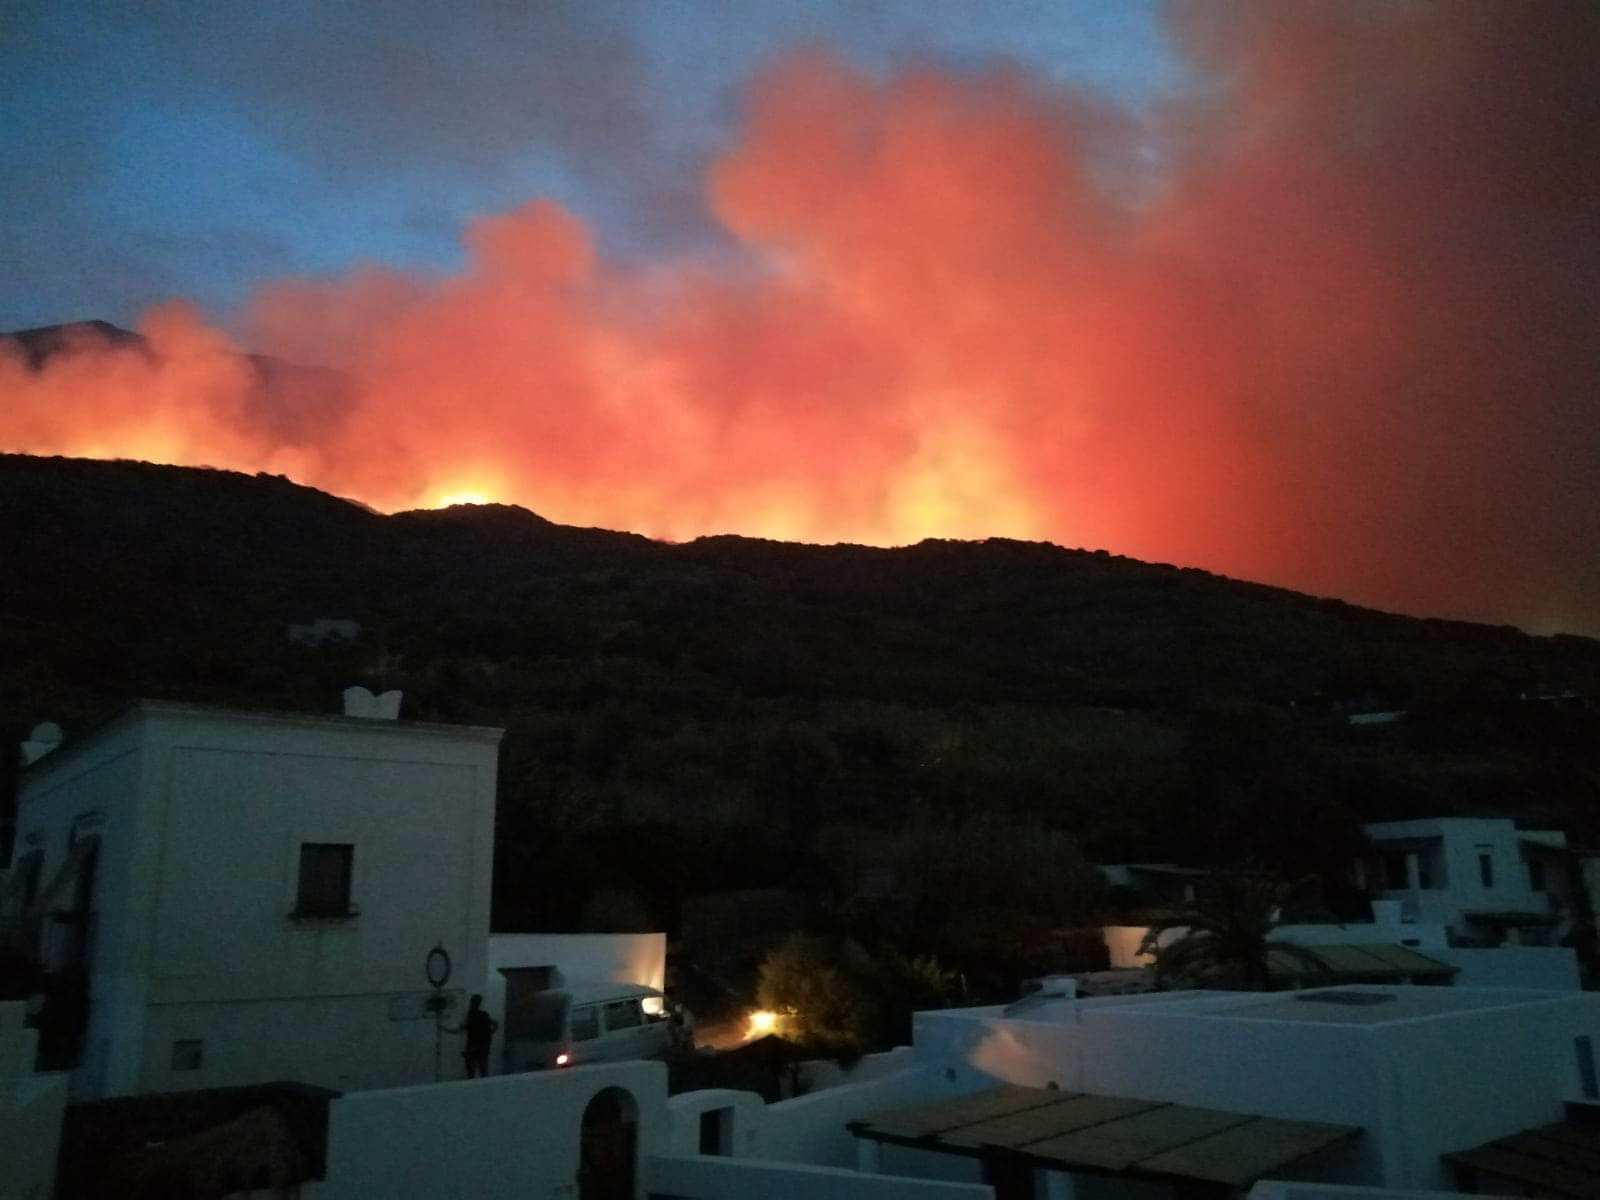 Incendio a Stromboli. Italia Nostra: “Metà dell’Isola incenerita, danni incalcolabili all’ecosistema e alle abitazioni”